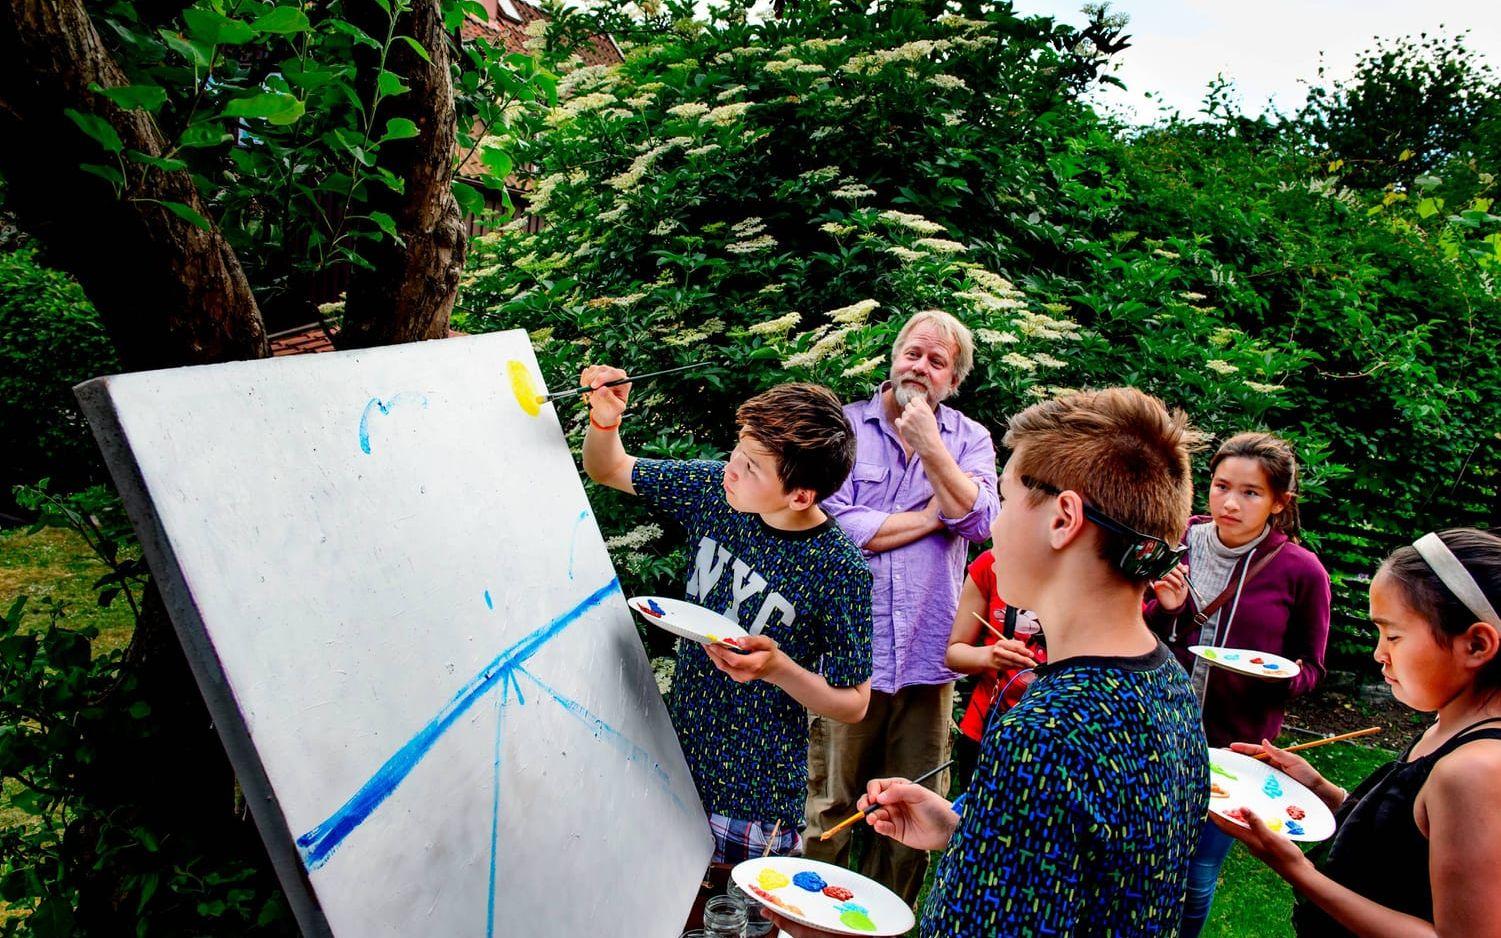 Hemma hos El Sistema Sveriges verksamhetsledare Camilla Sarner träffar de grönländska barnen Peter Apelgren och provar att måla.